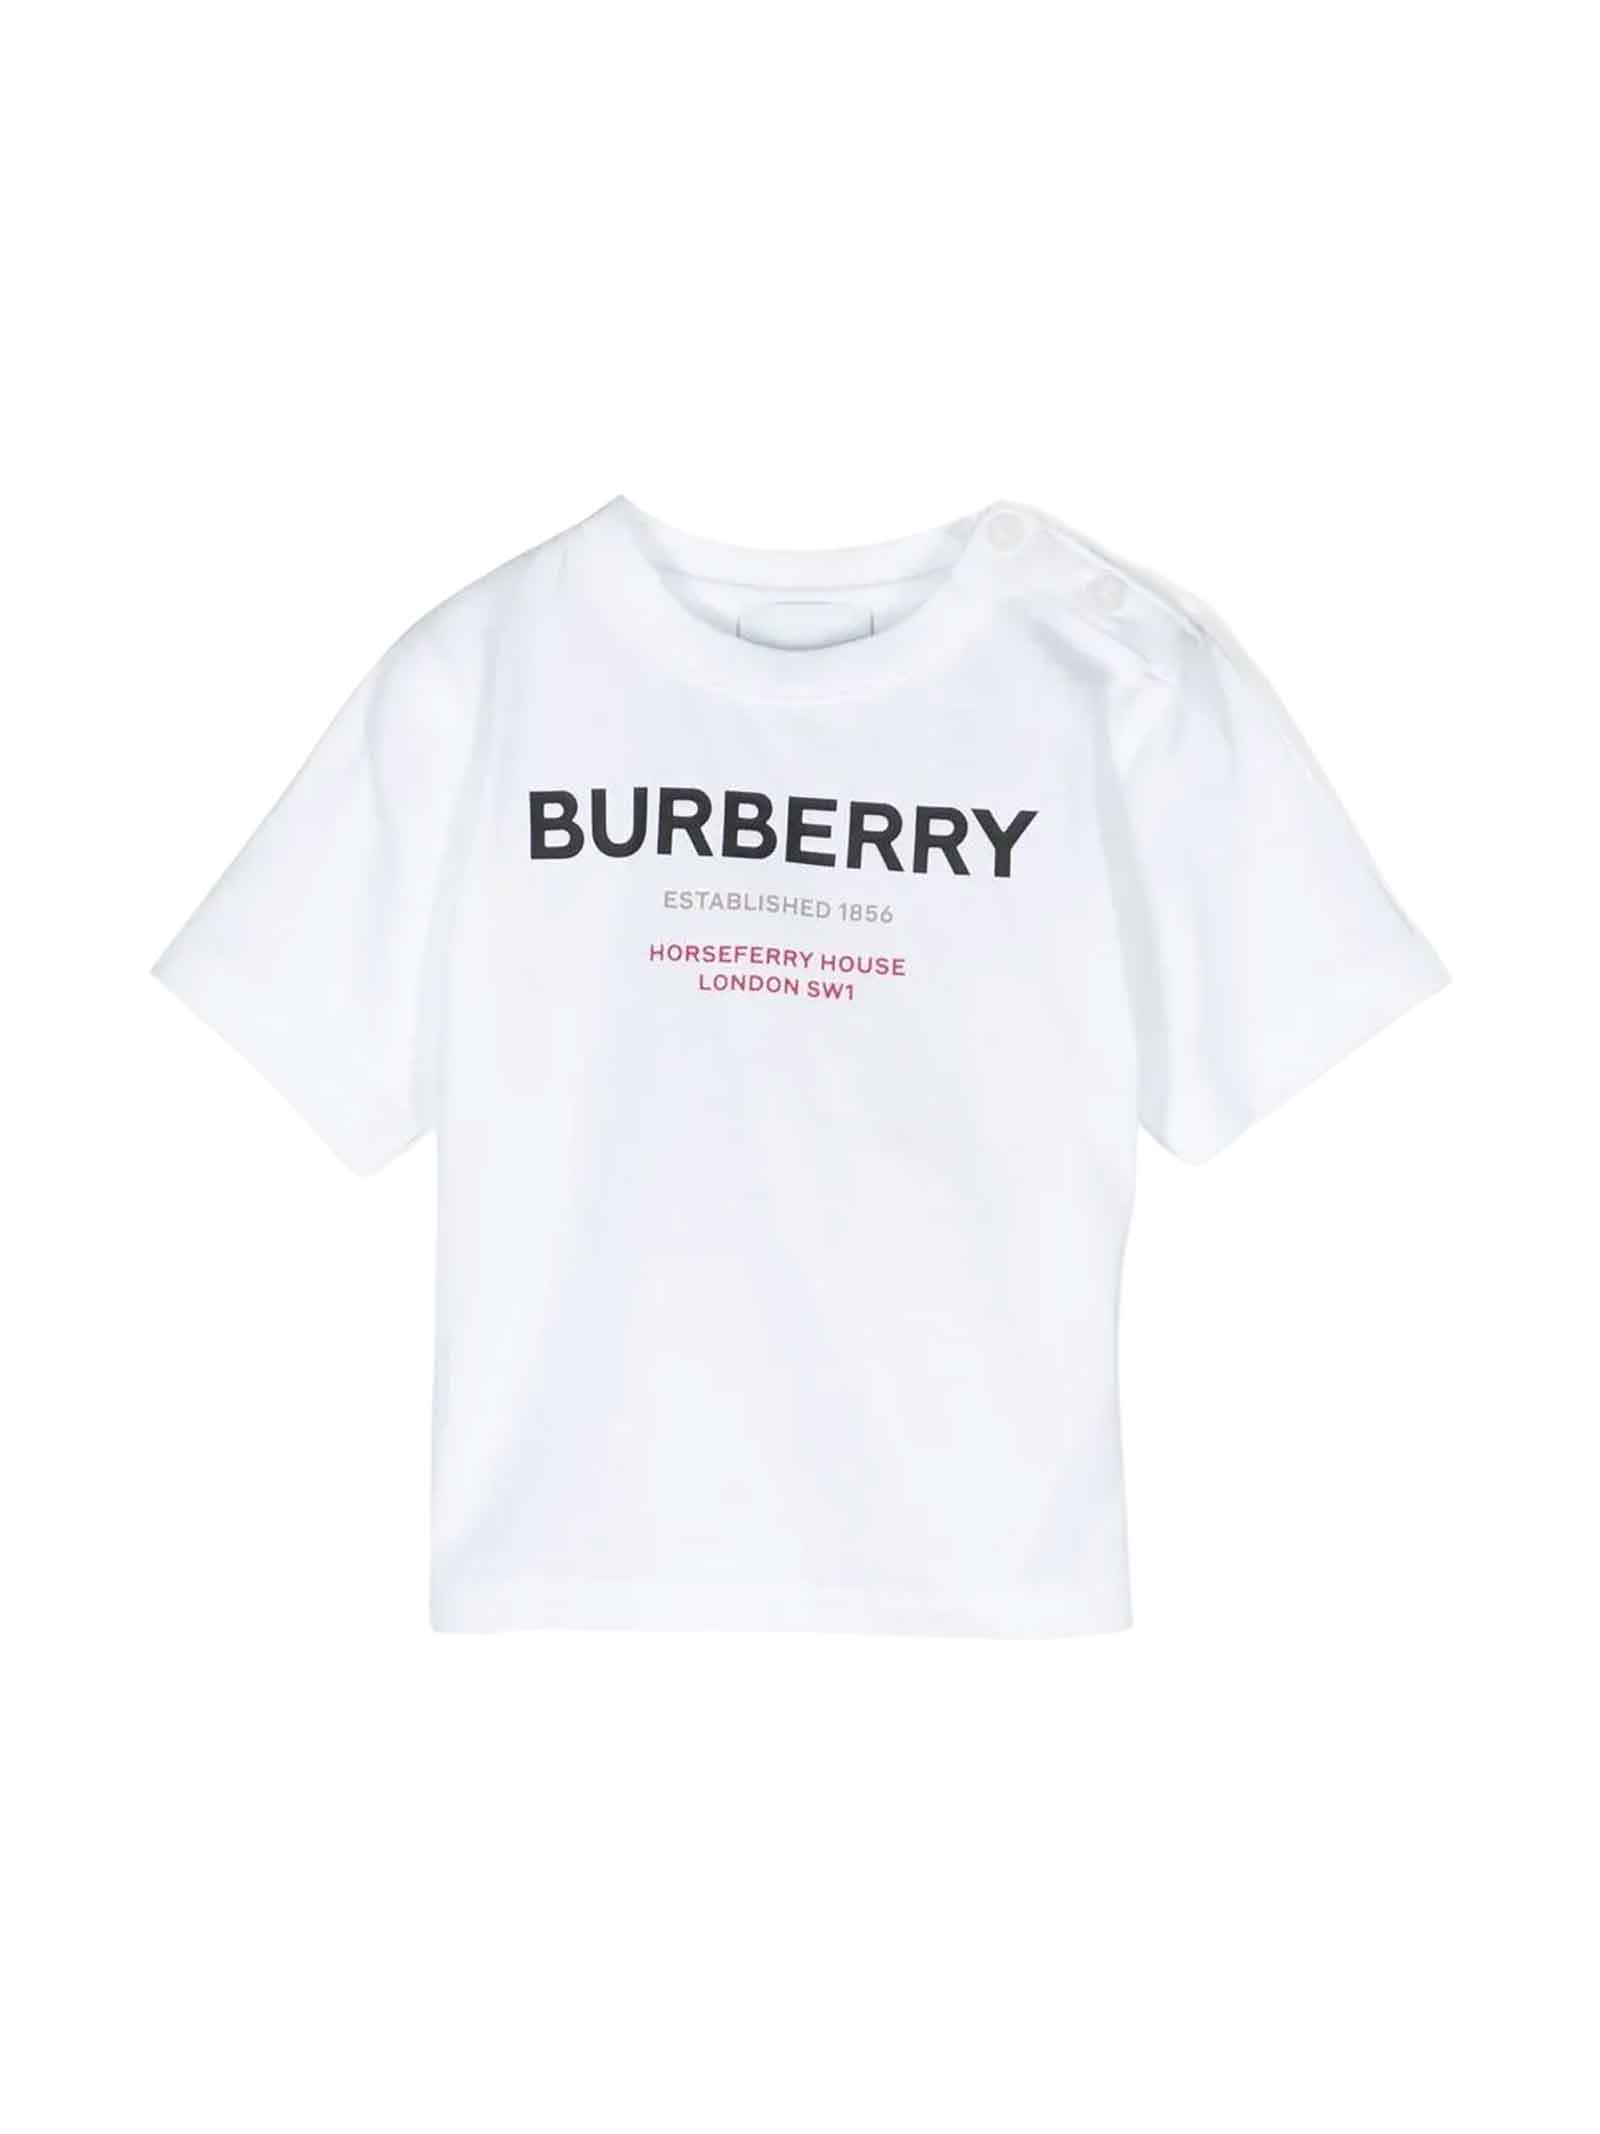 Burberry White T-shirt Baby Girl